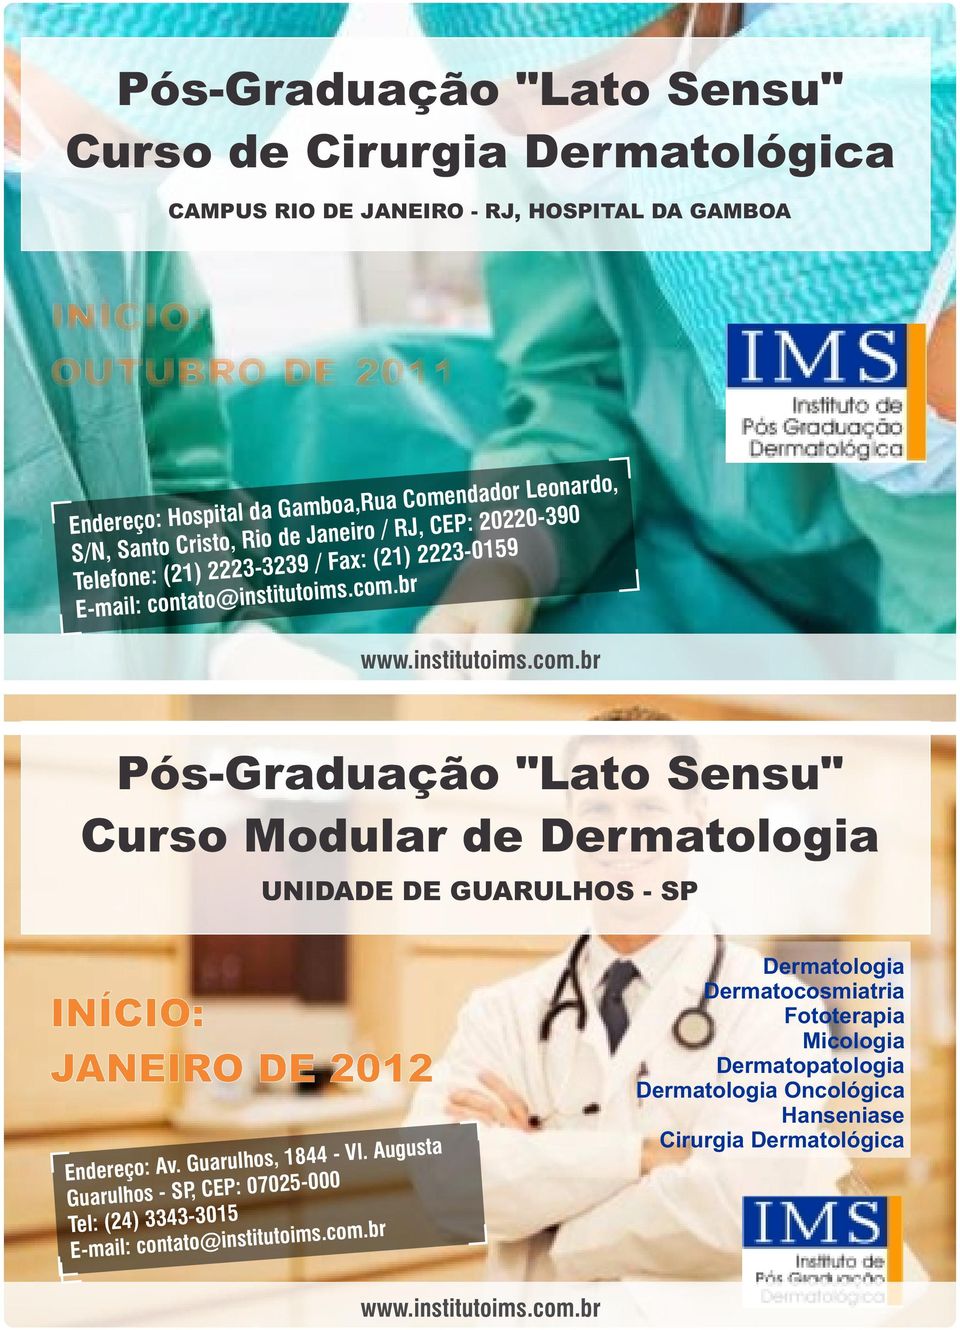 br www.institutoims.com.br Pós-Graduação "Lato Sensu" Curso Modular de Dermatologia UNIDADE DE GUARULHOS - SP INÍCIO: JANEIRO DE 2012 Endereço: Av. Guarulhos, 1844 - Vl.